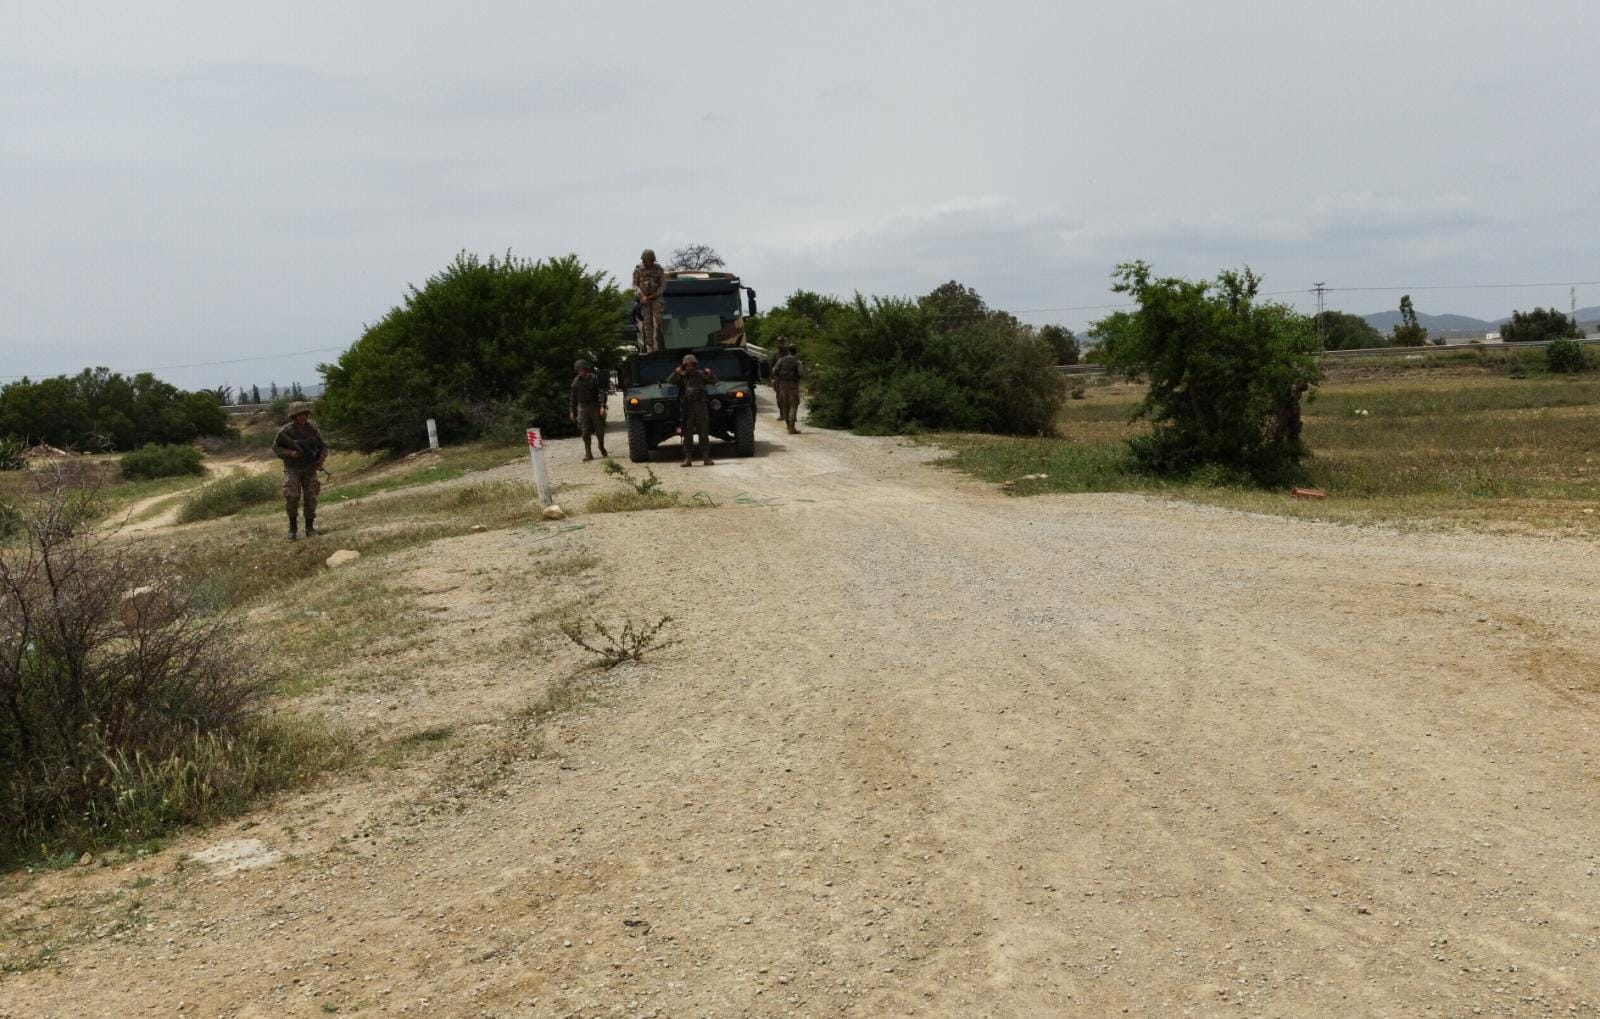 Ejercicio de escolta de convoy realizado en el exterior de la base militar